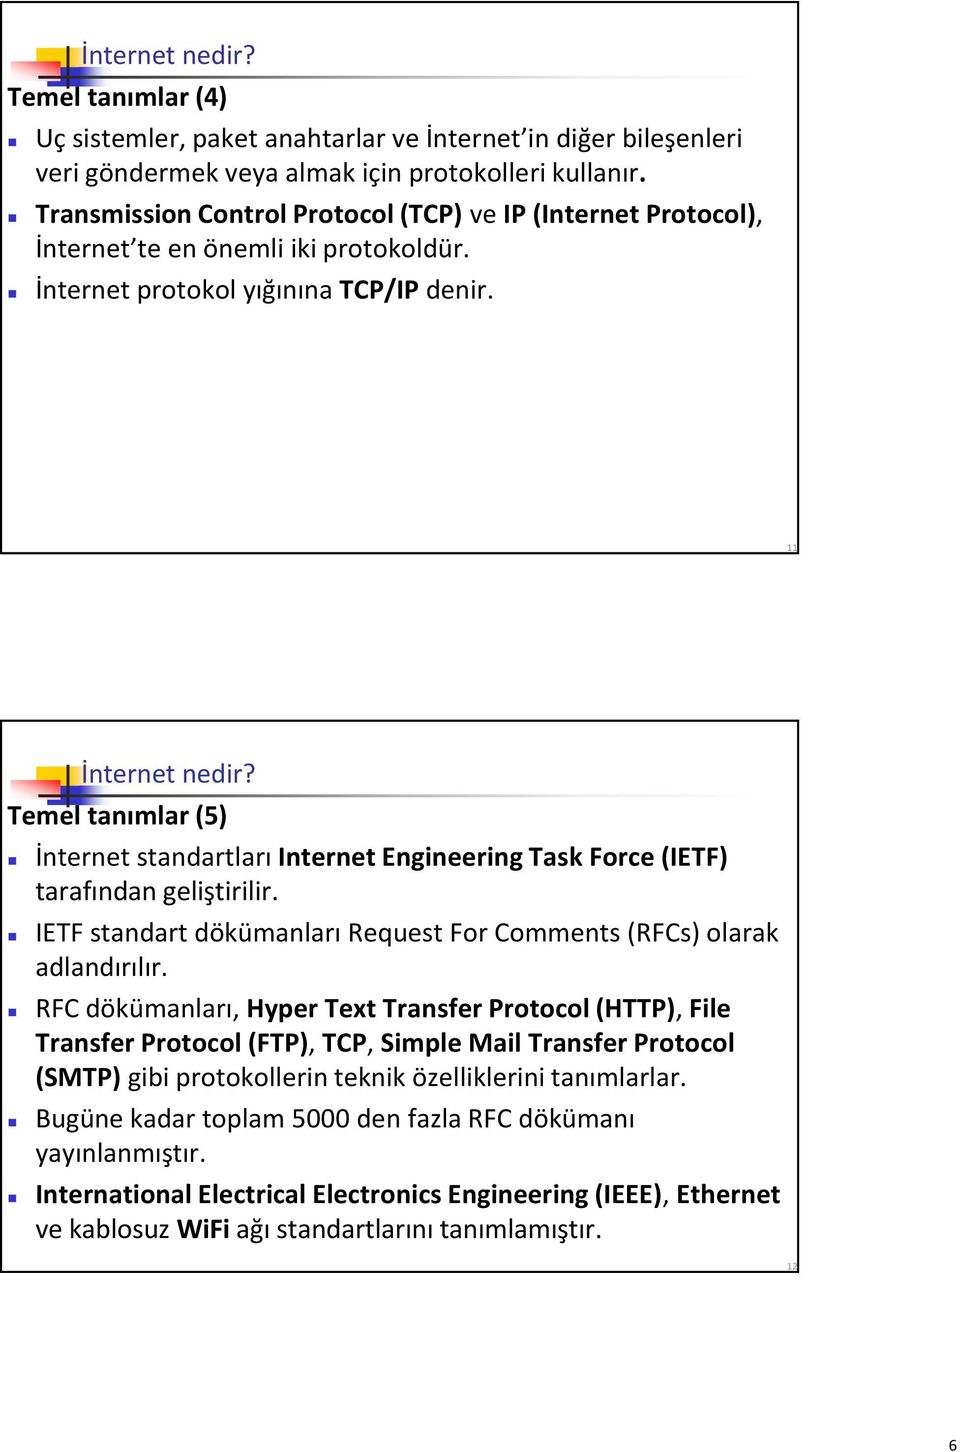 Temel tanımlar (5) İnternet standartları Internet Engineering Task Force (IETF) tarafından geliştirilir. IETF standart dökümanları Request For Comments (RFCs) olarak adlandırılır.